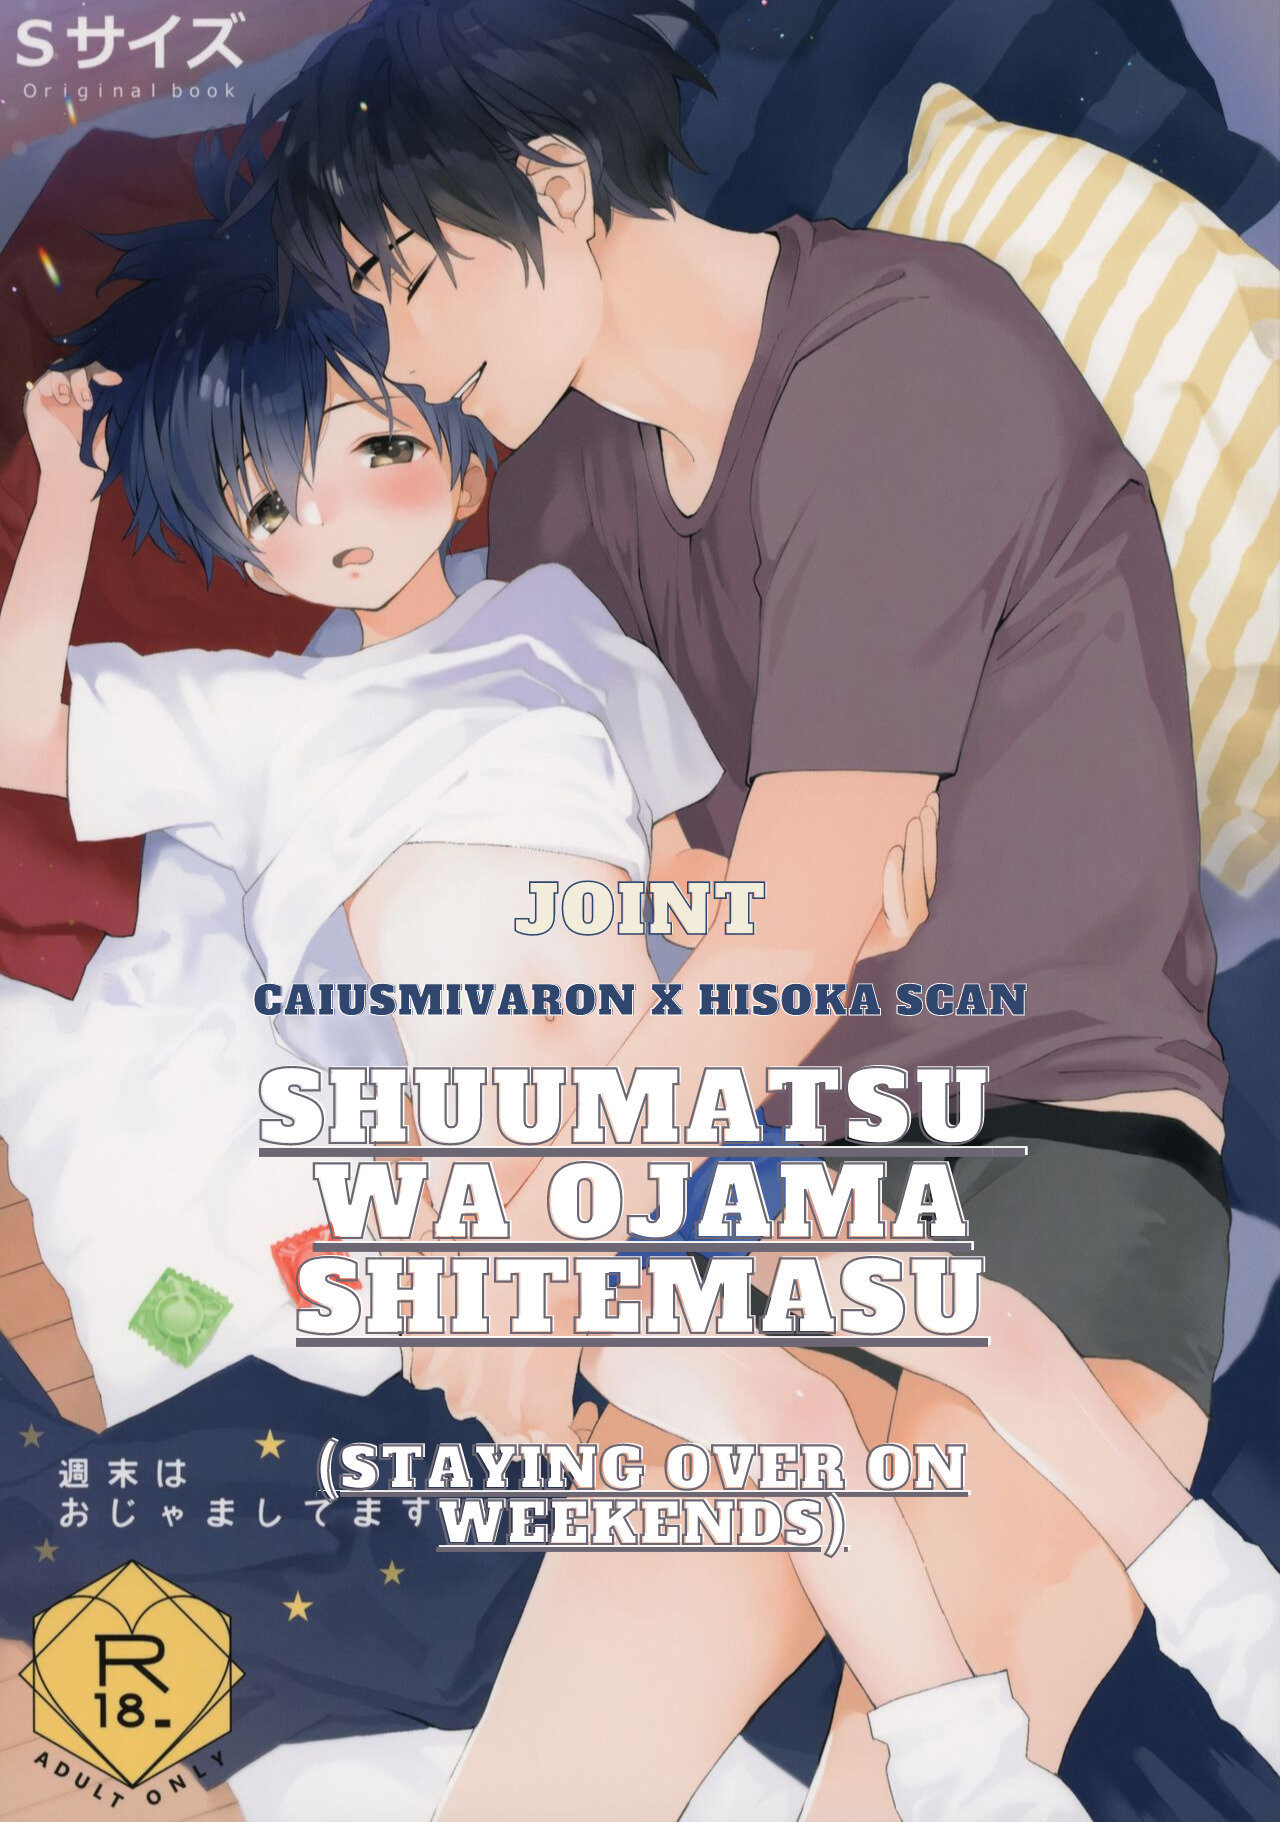 Shuumatsu wa Ojama Shitemasu - Staying Over On Weekends - 2